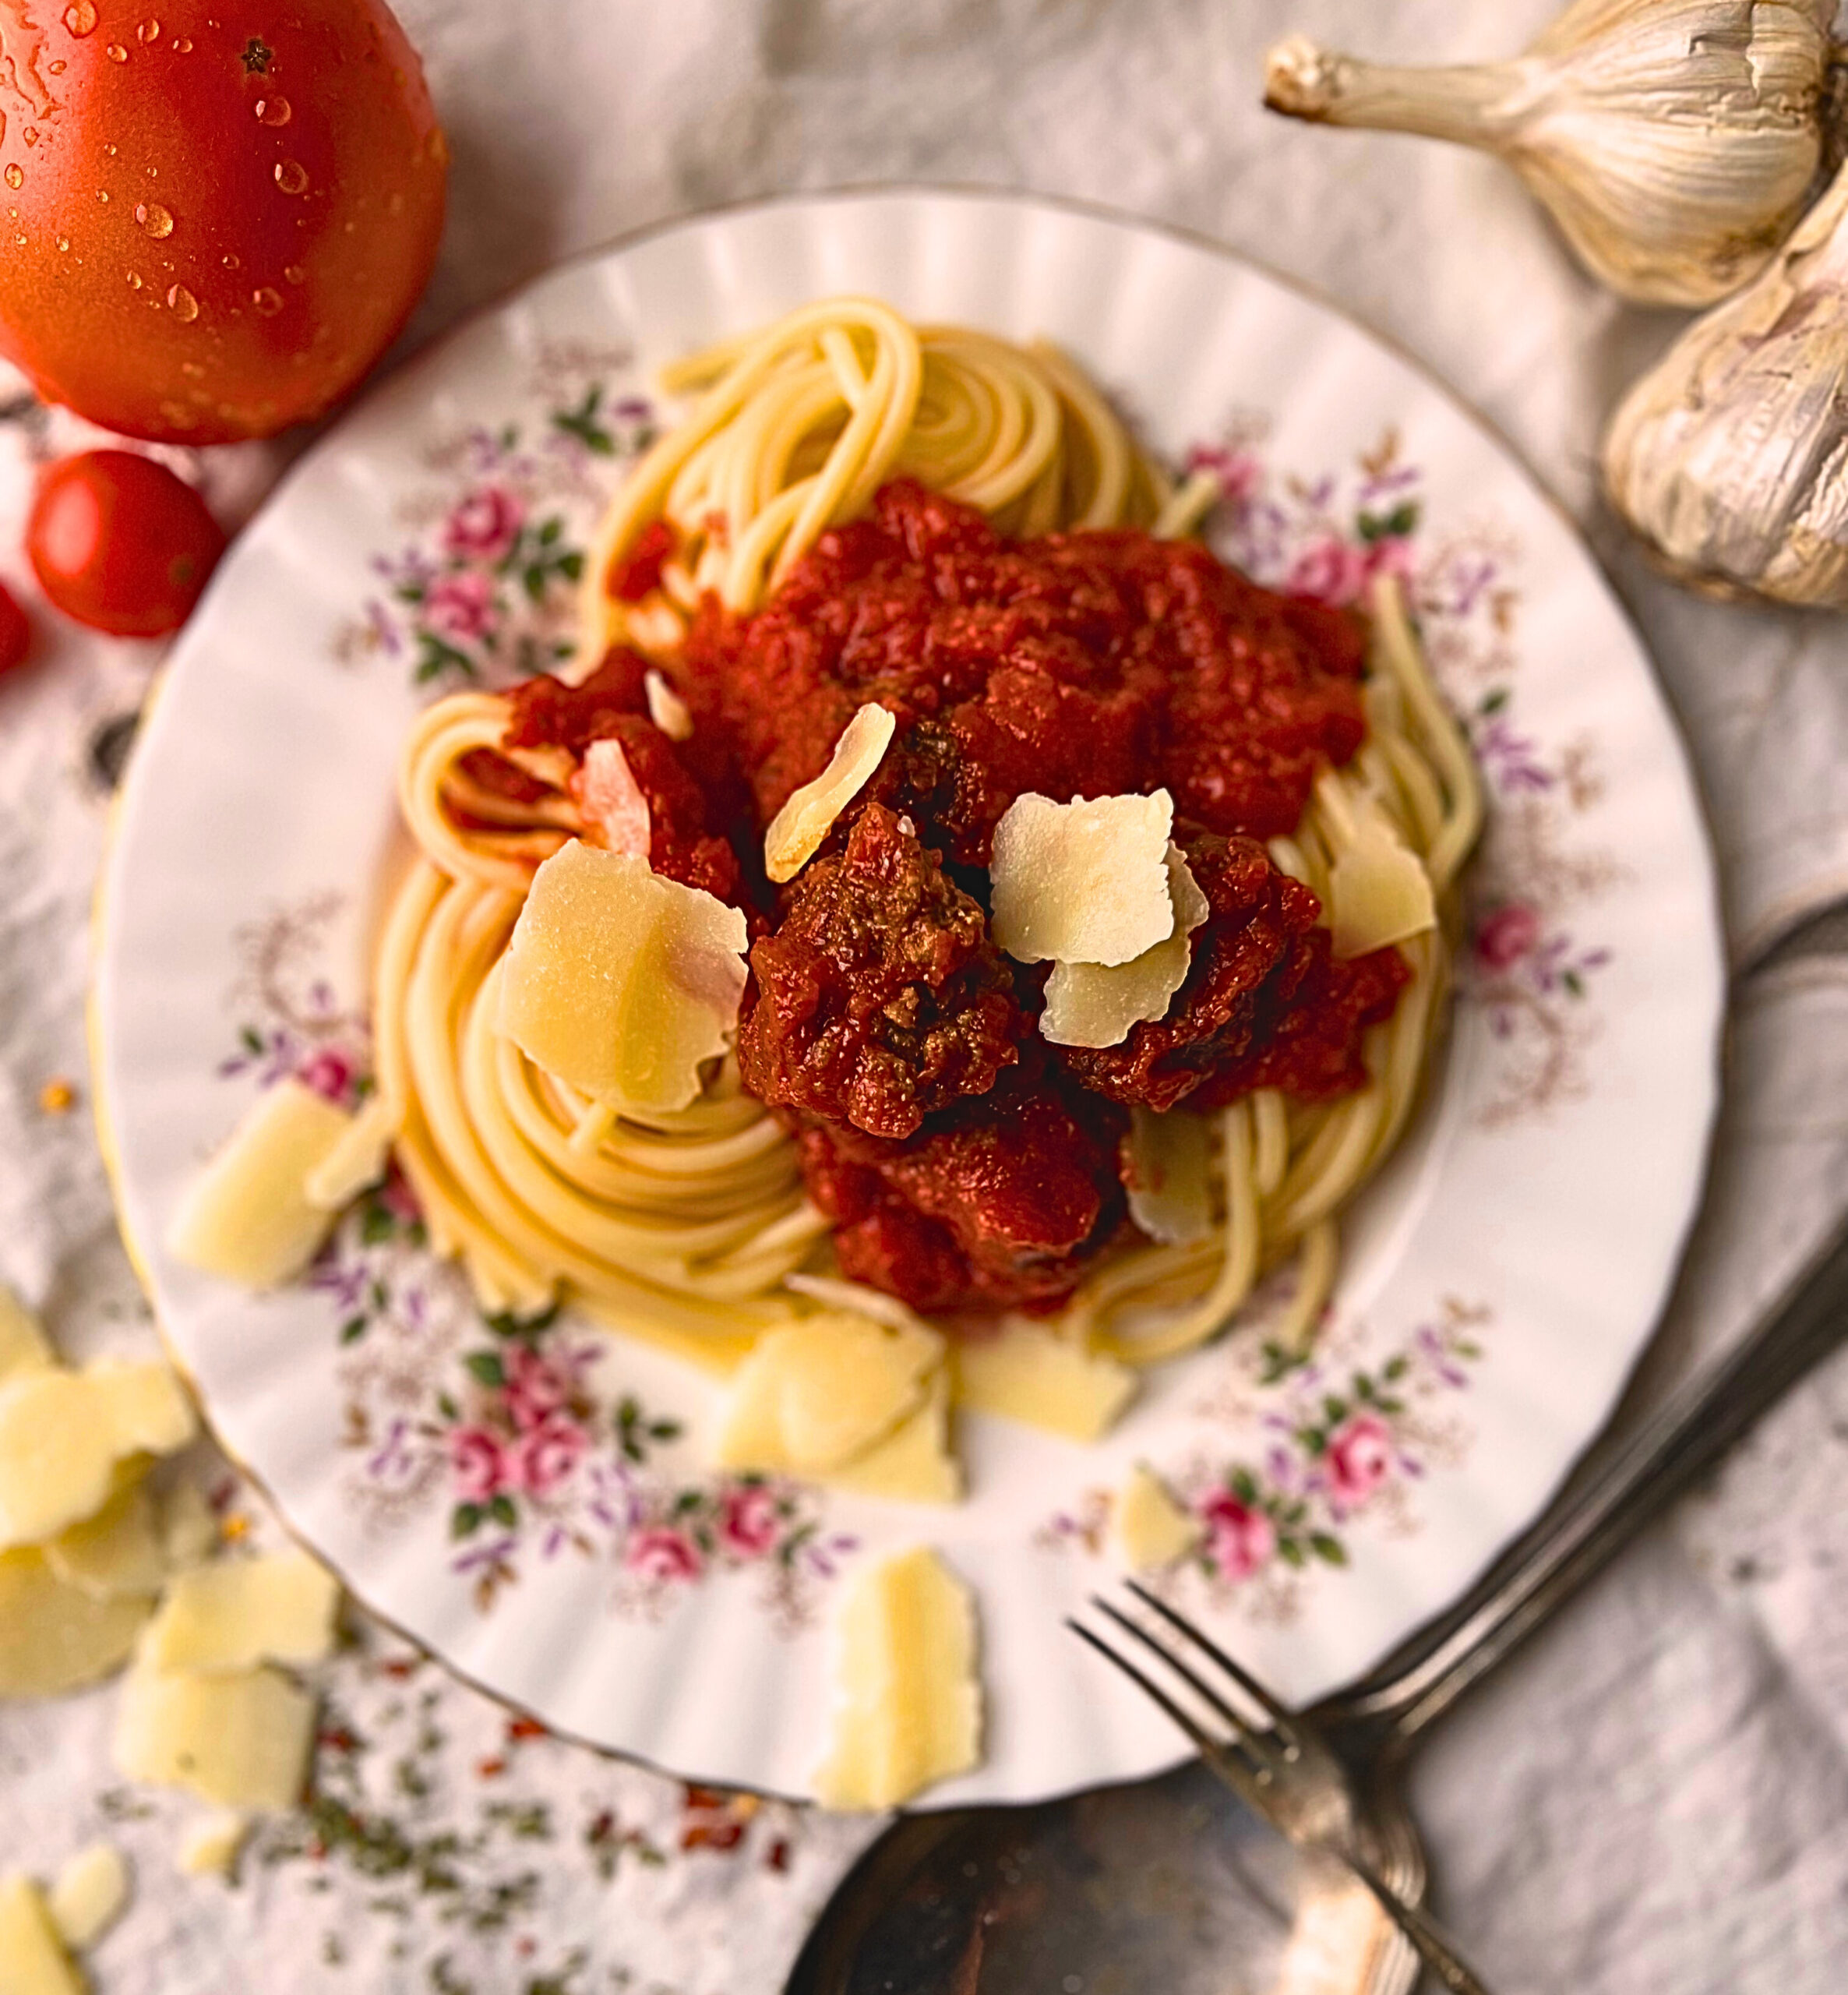 Spaghetti and meatballs #spaghetti #speghettirecipe #mealballs #meatballsrecipe #dinnerrecipe #fromscratchmeatballs #vintagerecipe #oldfashionedrecipe #spaghettisauce #spaghettisaucehomemade #meatballdinnerideas #foodie